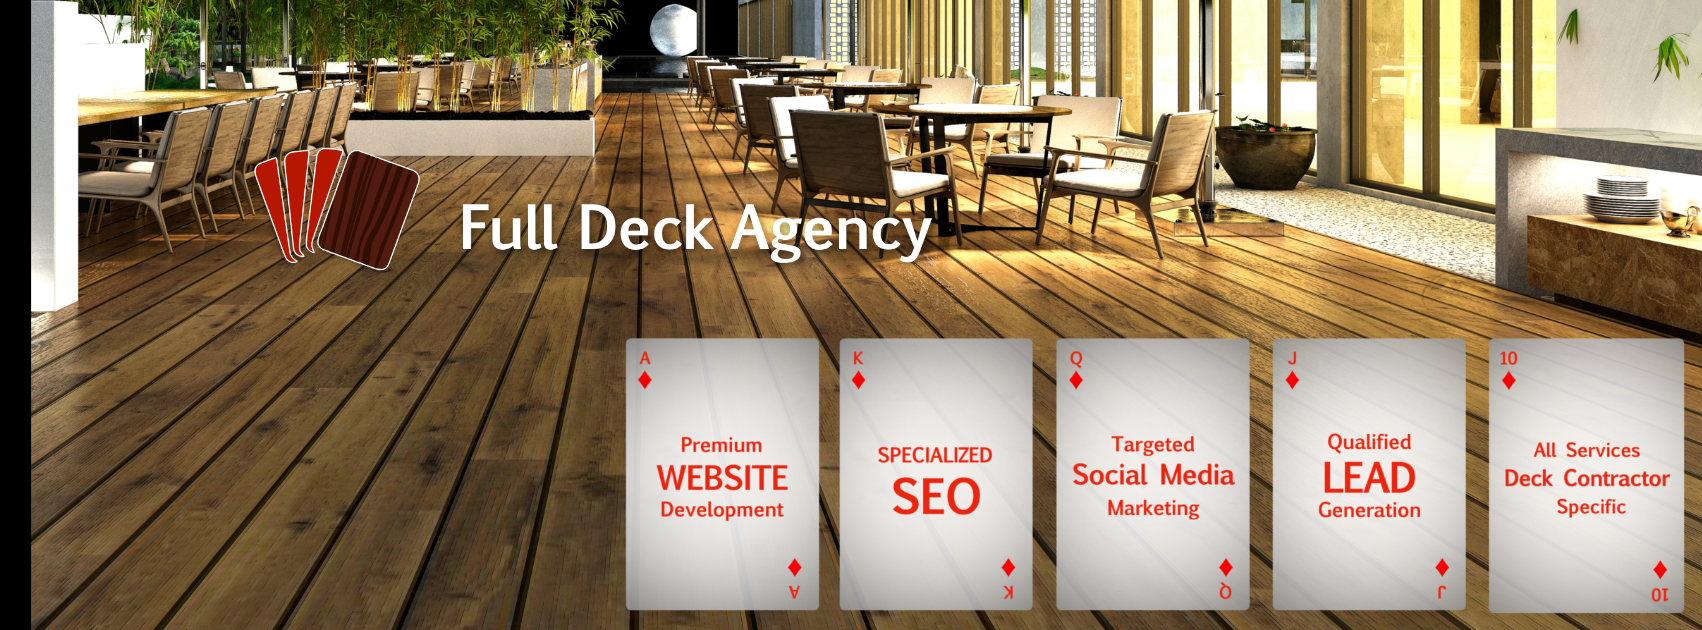 Full Deck Agency